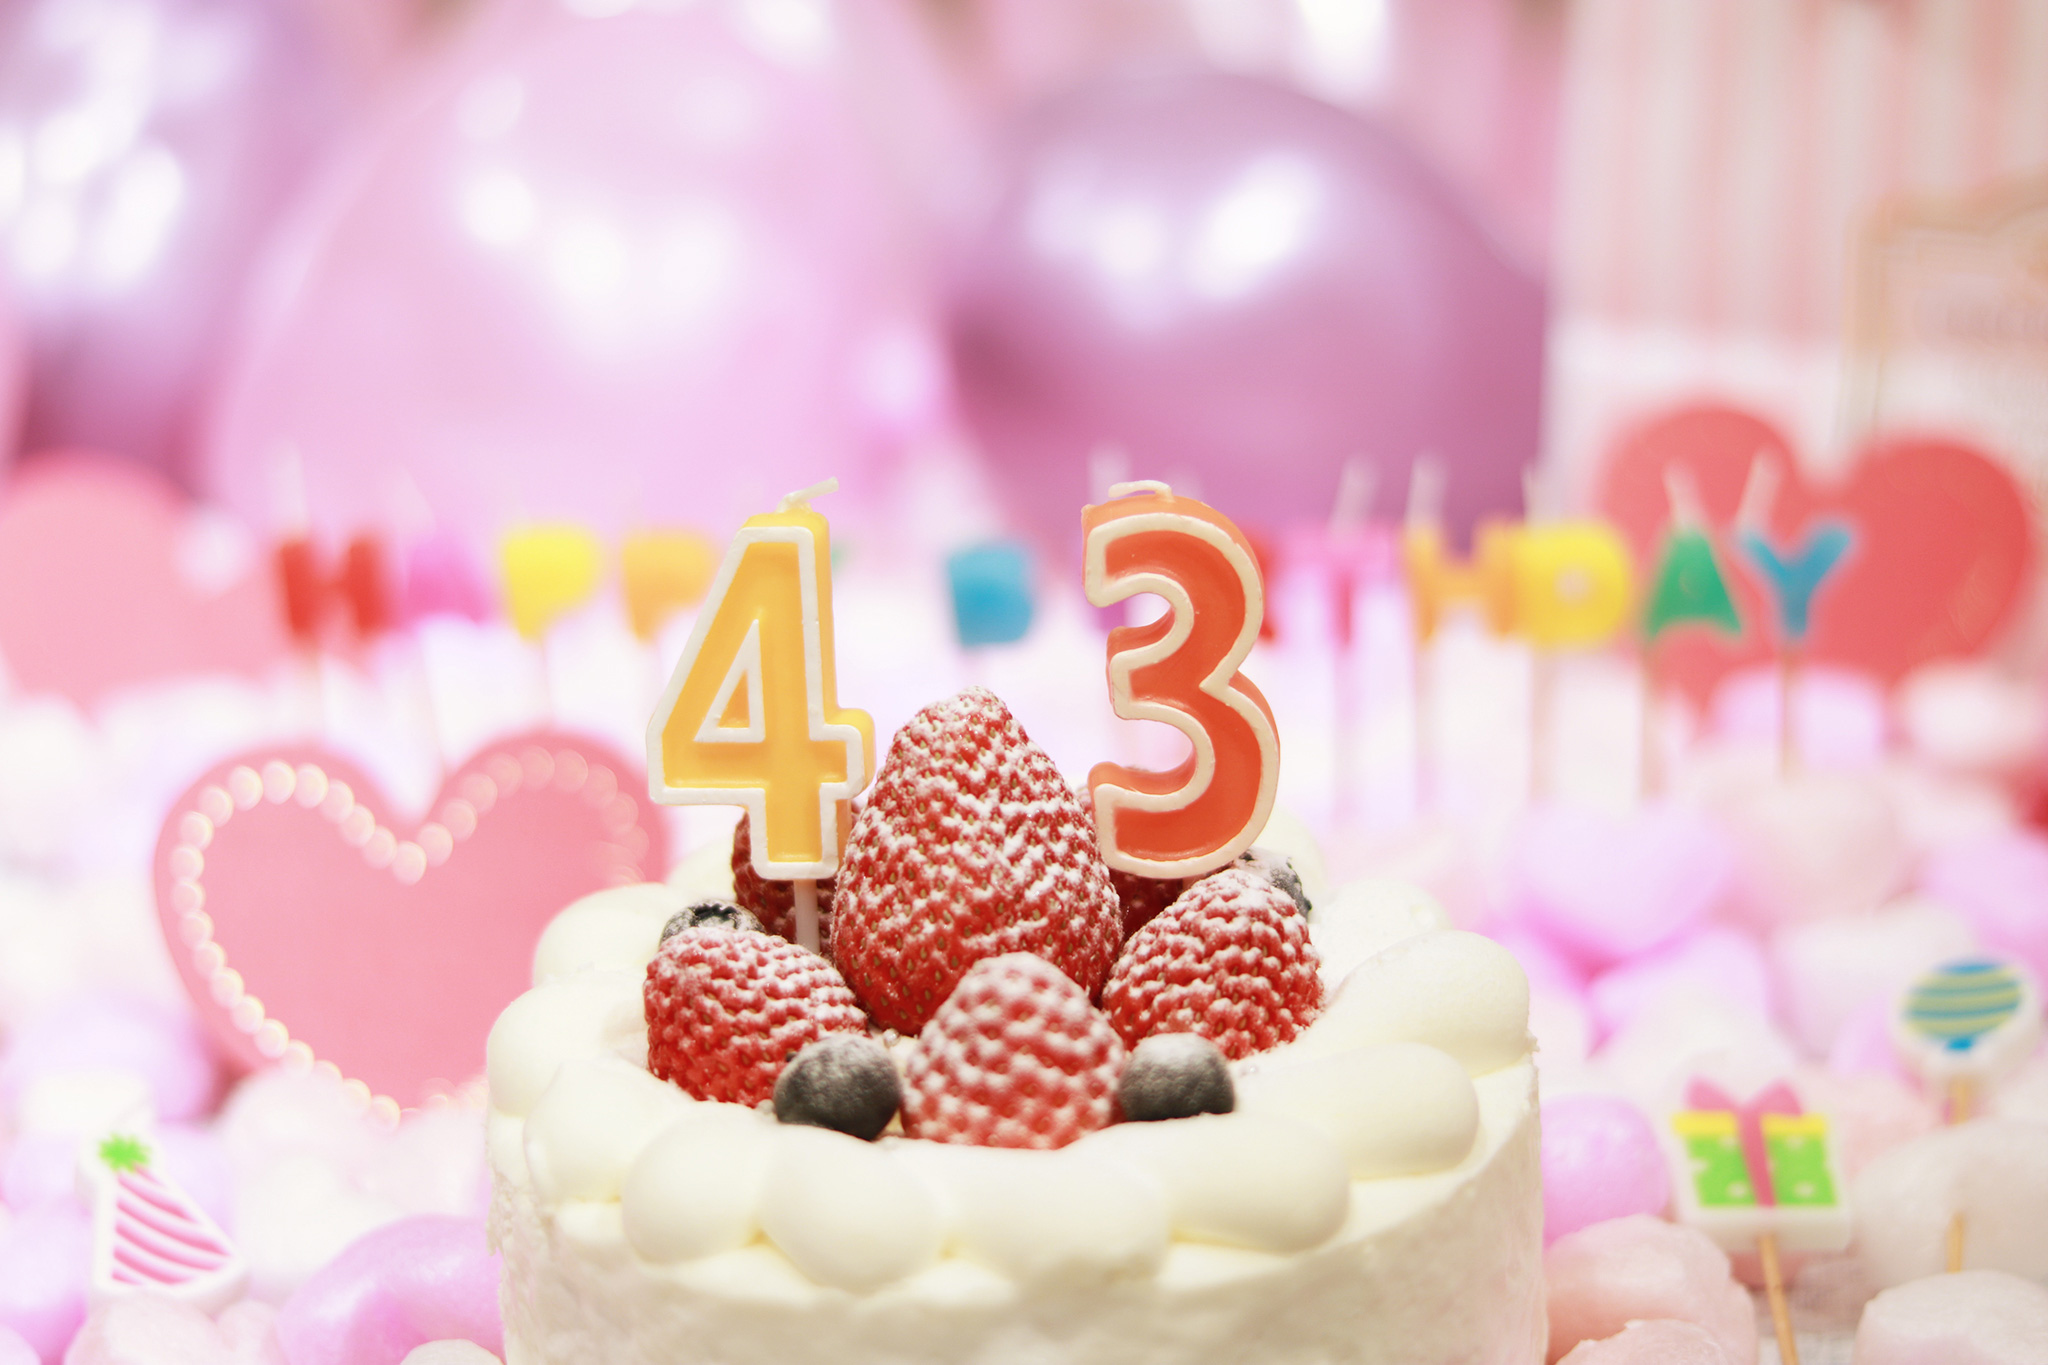 オシャレな誕生日画像 可愛いケーキとキャンドルでお祝い 43歳編 のフリー画像 おしゃれなフリー写真素材 Girly Drop